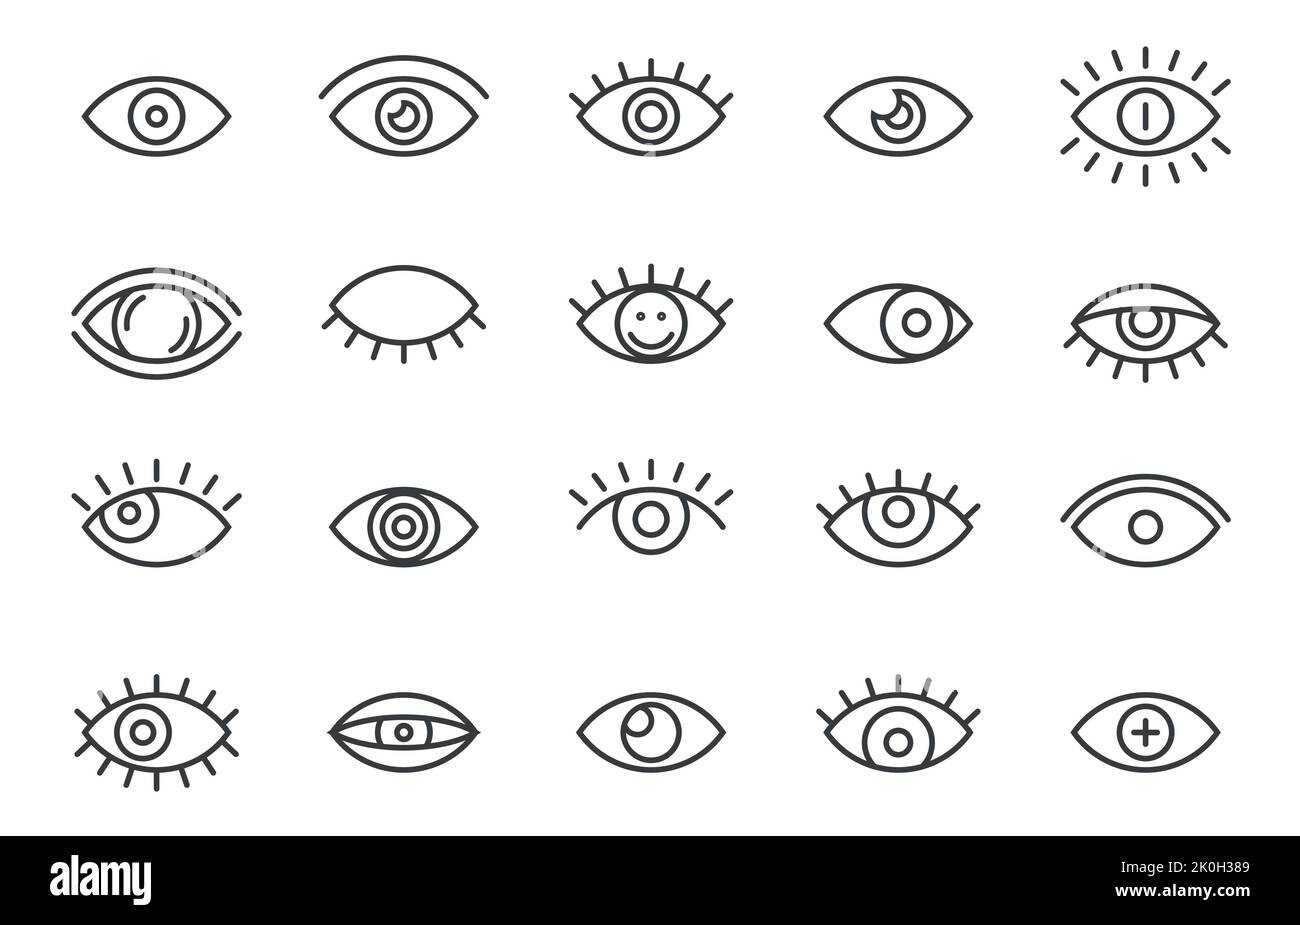 Contours des icônes oculaires. Simple ligne mince yeux cils signes, vue humaine santé science médecine concept. Collection à vecteur isolé Illustration de Vecteur